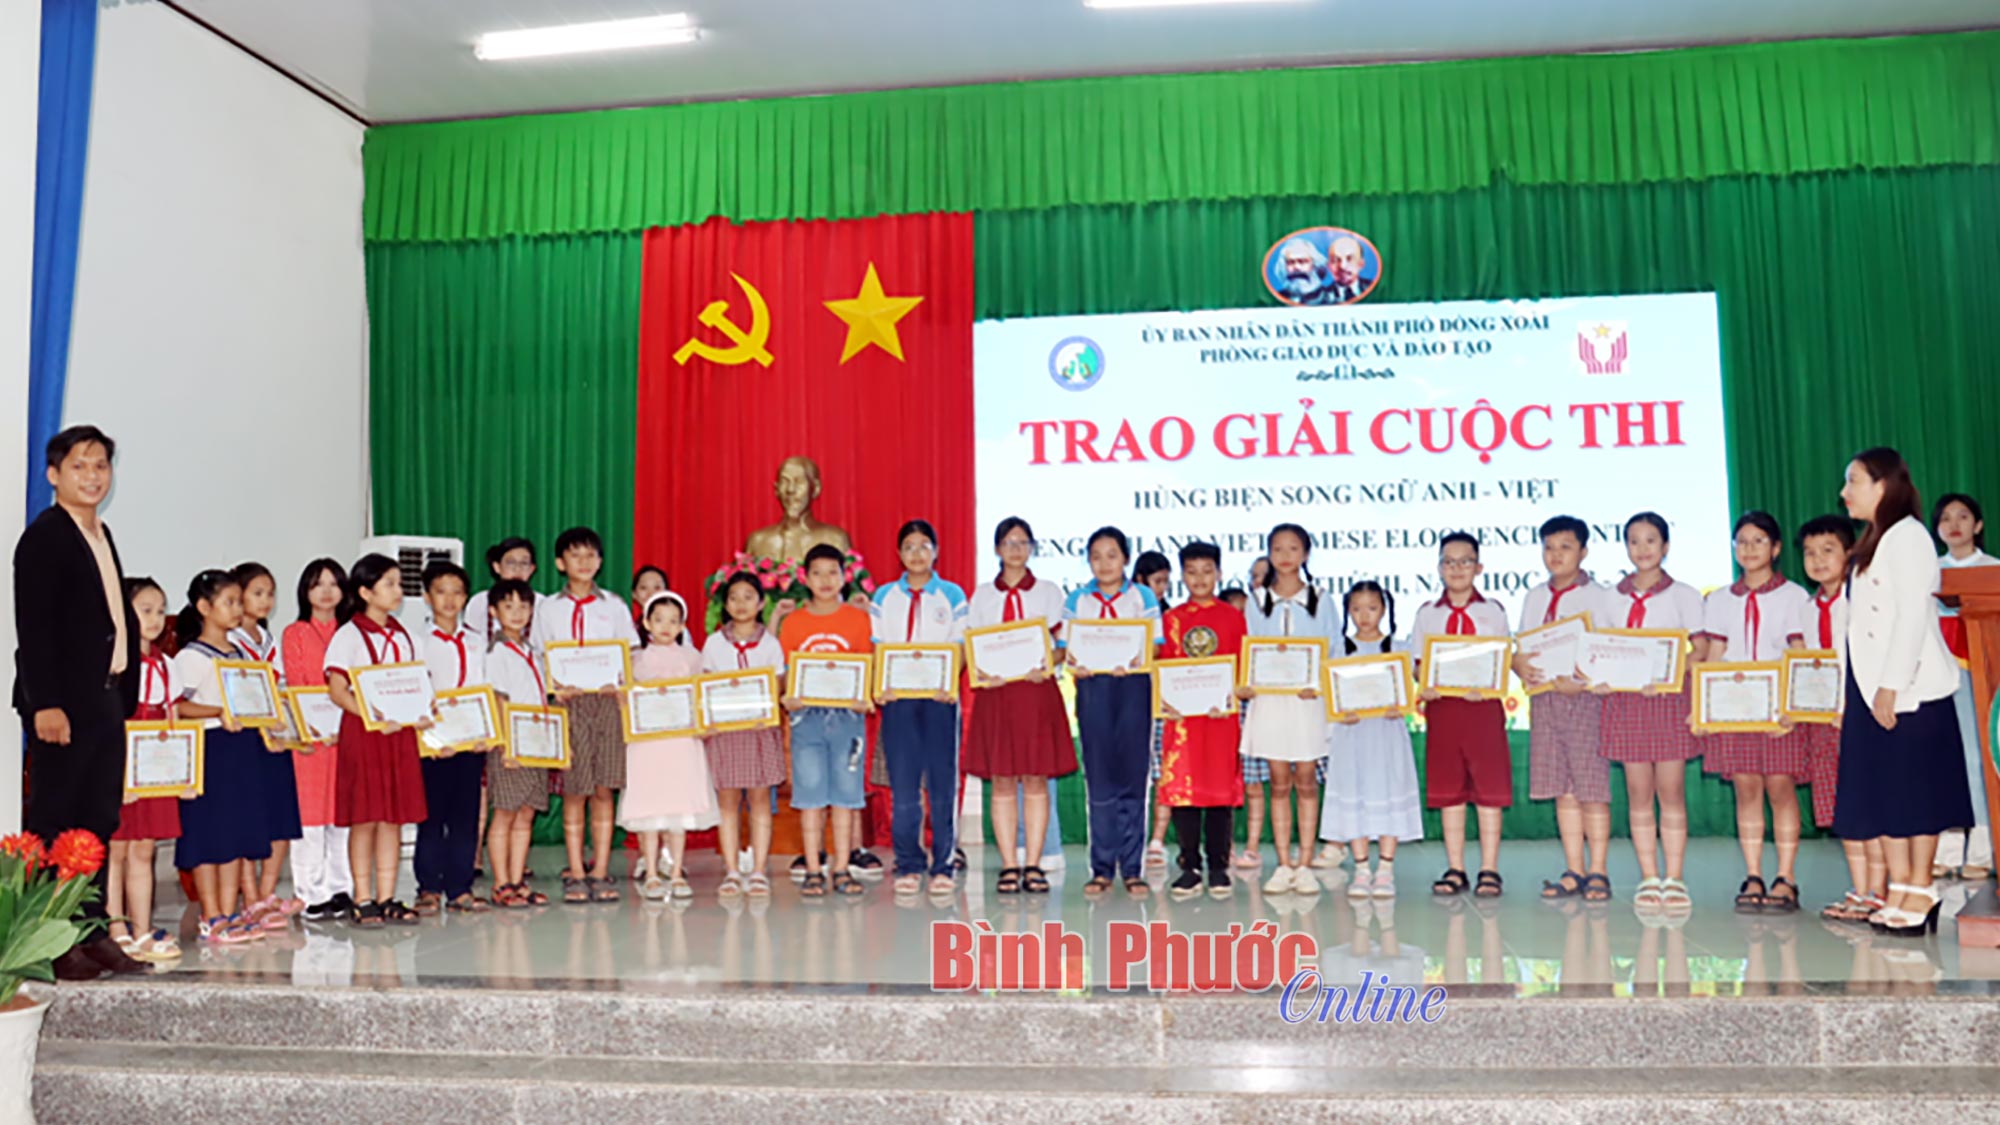 Gần 150 triệu đồng học bổng được trao tại chung kết cuộc thi hùng biện song ngữ Anh - Việt 